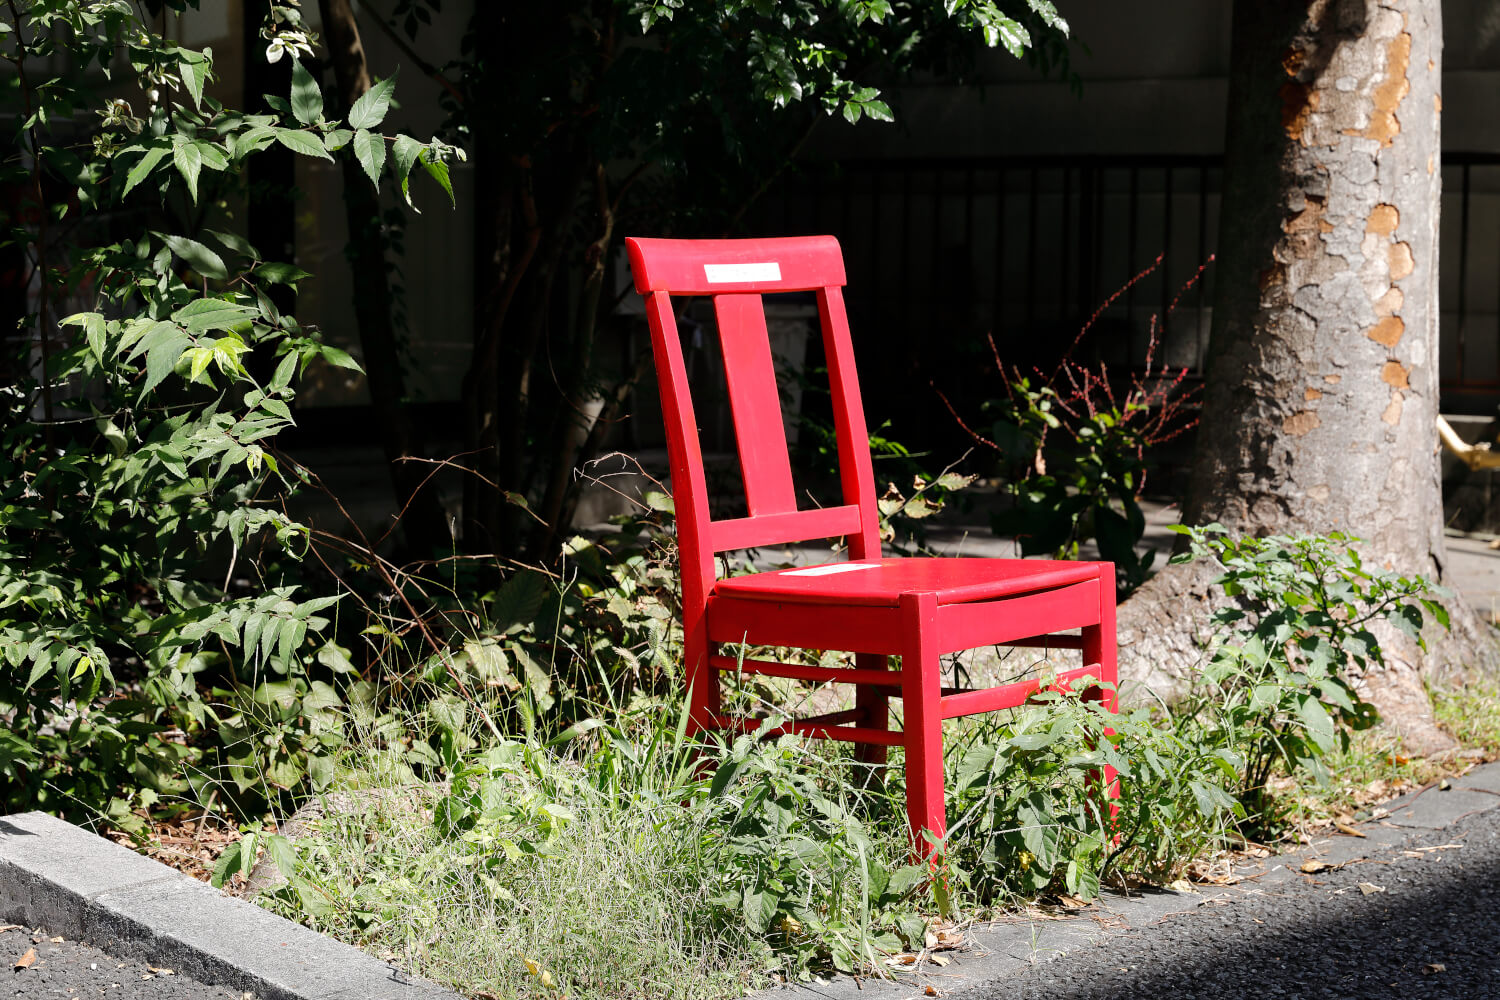 吉祥寺から始まった「ふらり赤い椅子プロジェクト」。商店街や街中で見かけたら座って休憩してみて。